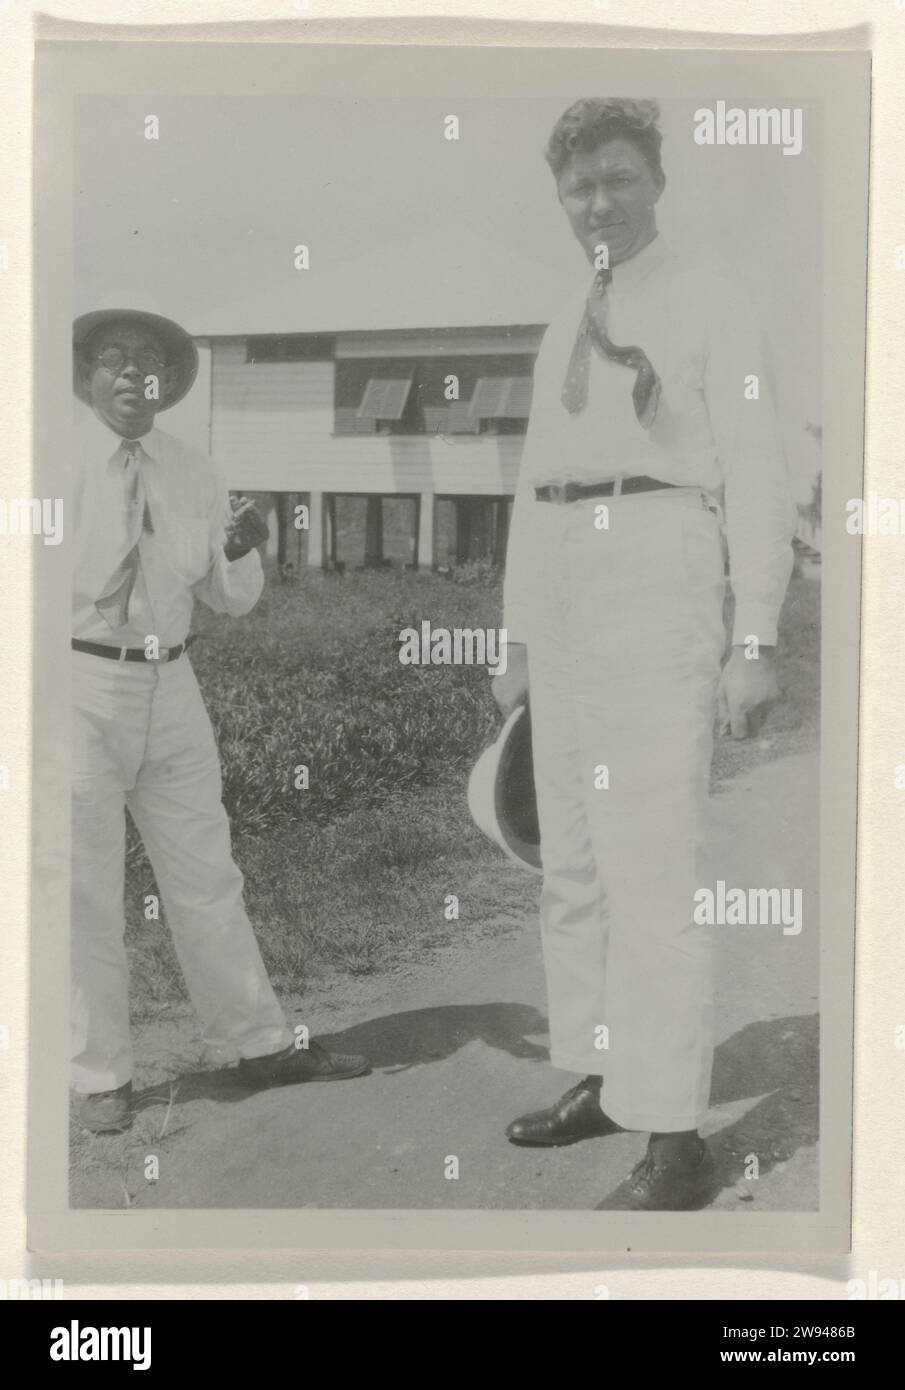 Zwei Männer in Moengo, 1929–1930 fotografieren Suriname fotografische Unterstützung historischer Personen, die nicht unter dem Namen Moengo bekannt sind. Albina Stockfoto